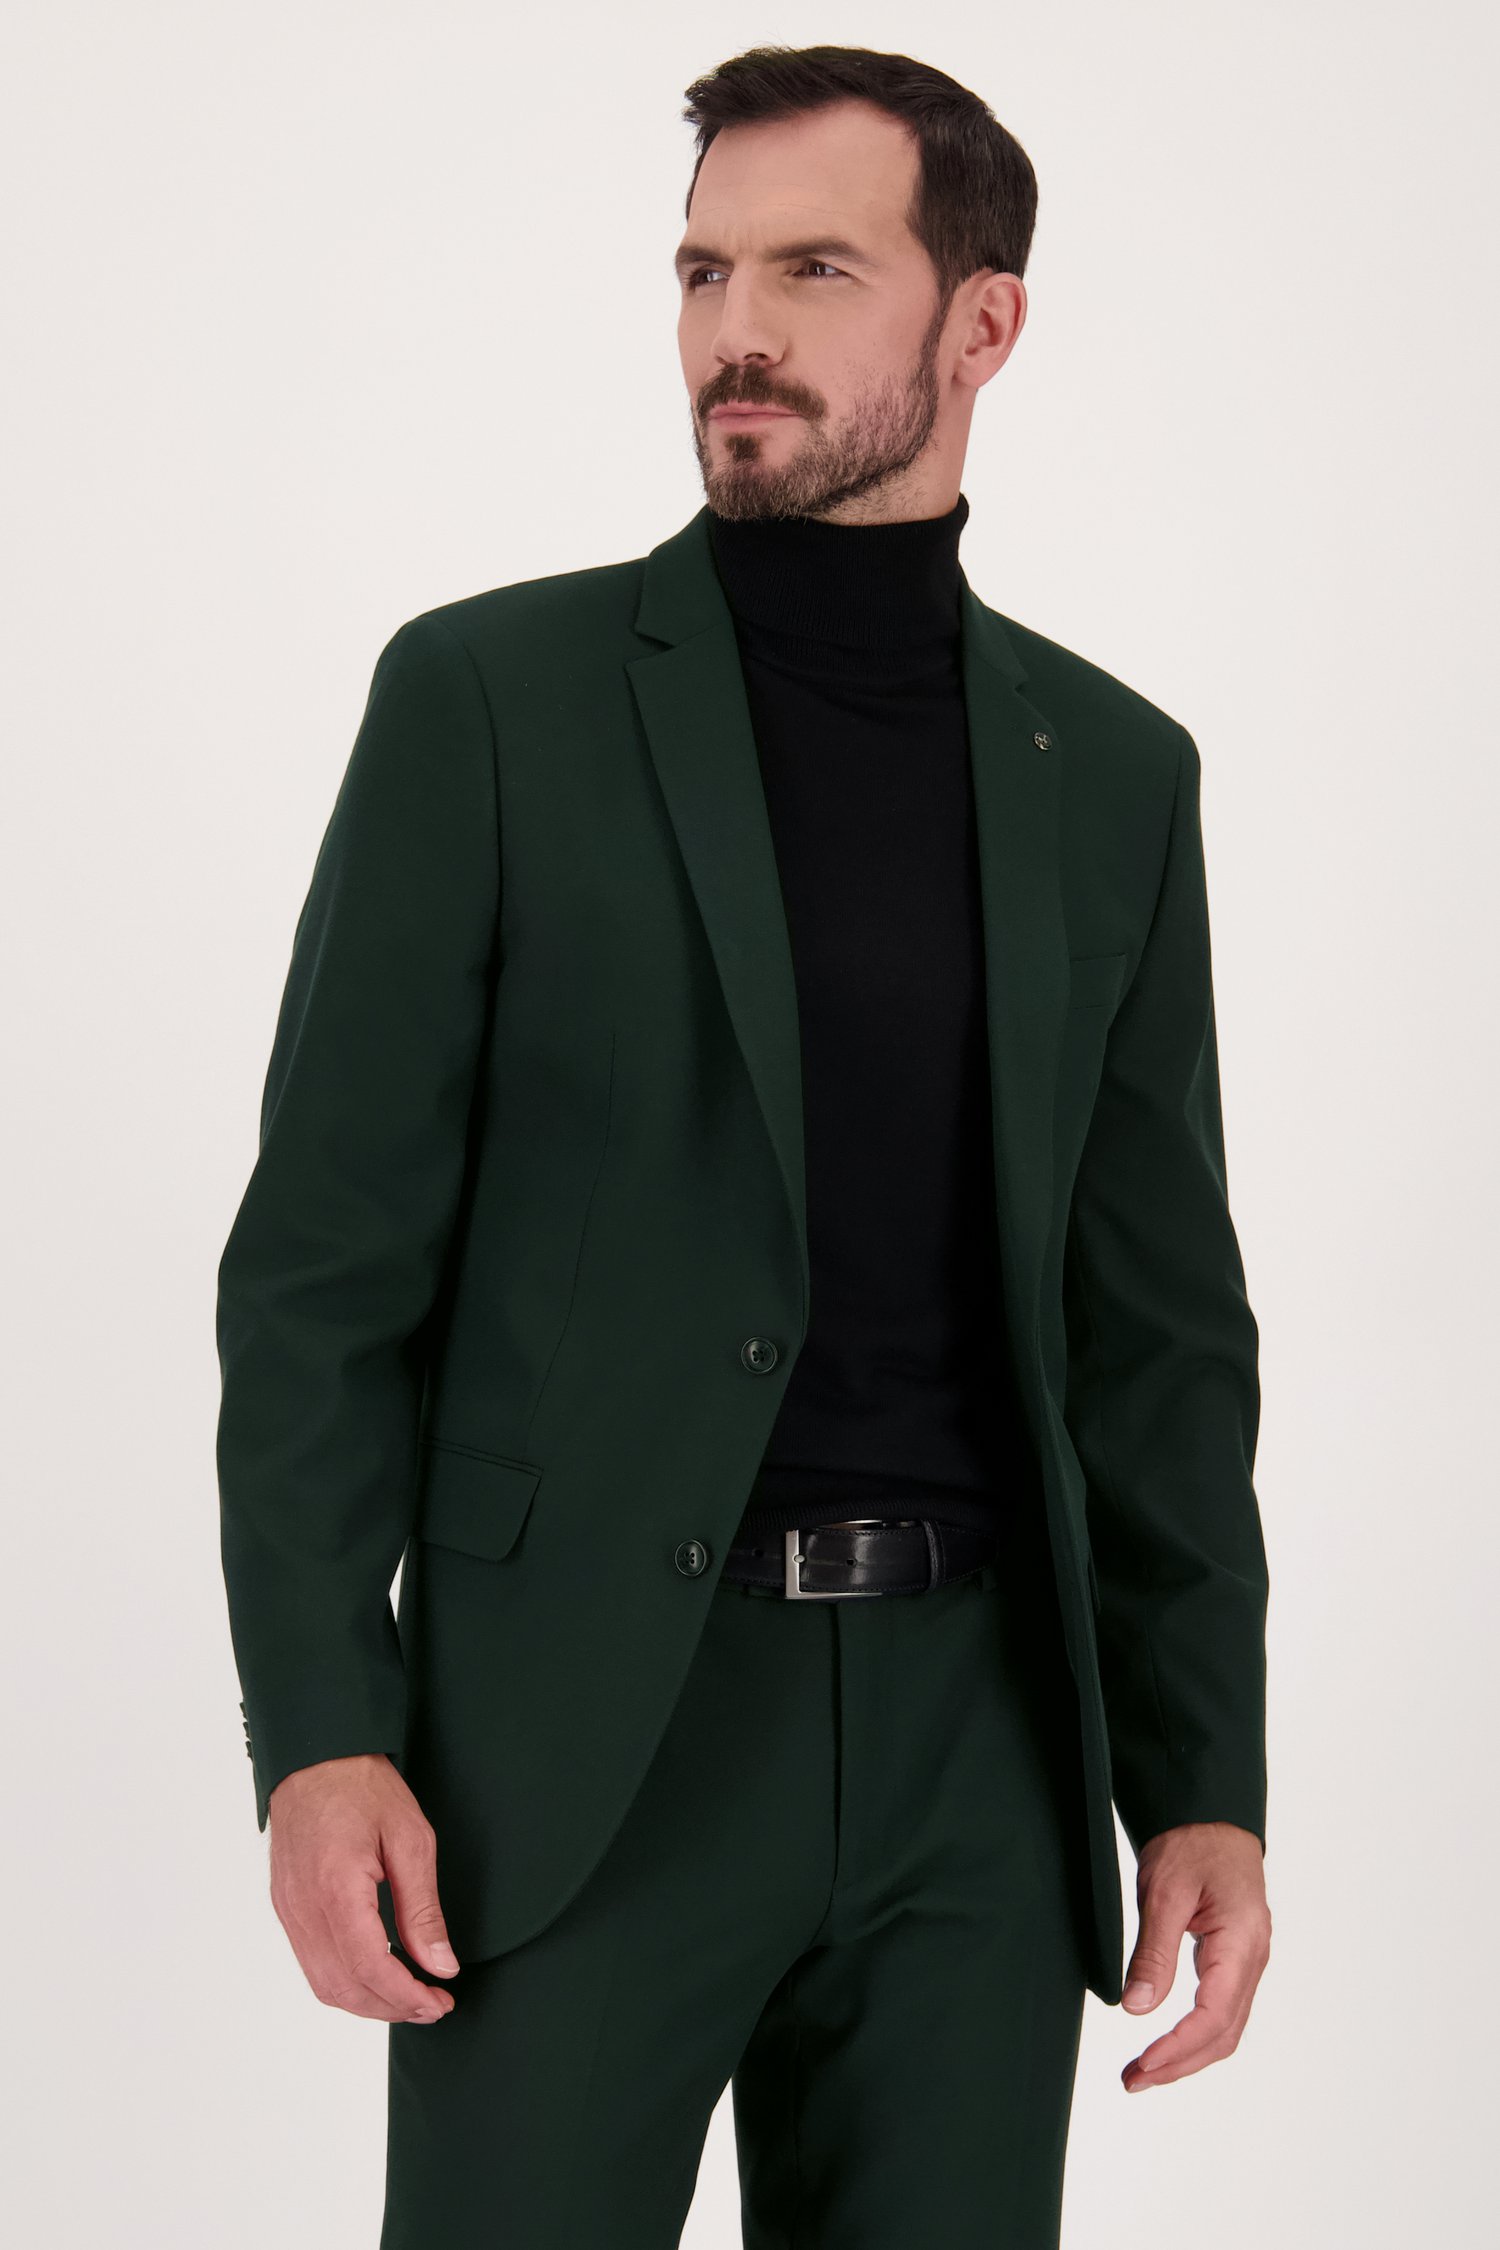 Veste de costume vert foncé - Ron - Regular fit de Dansaert Black pour Hommes